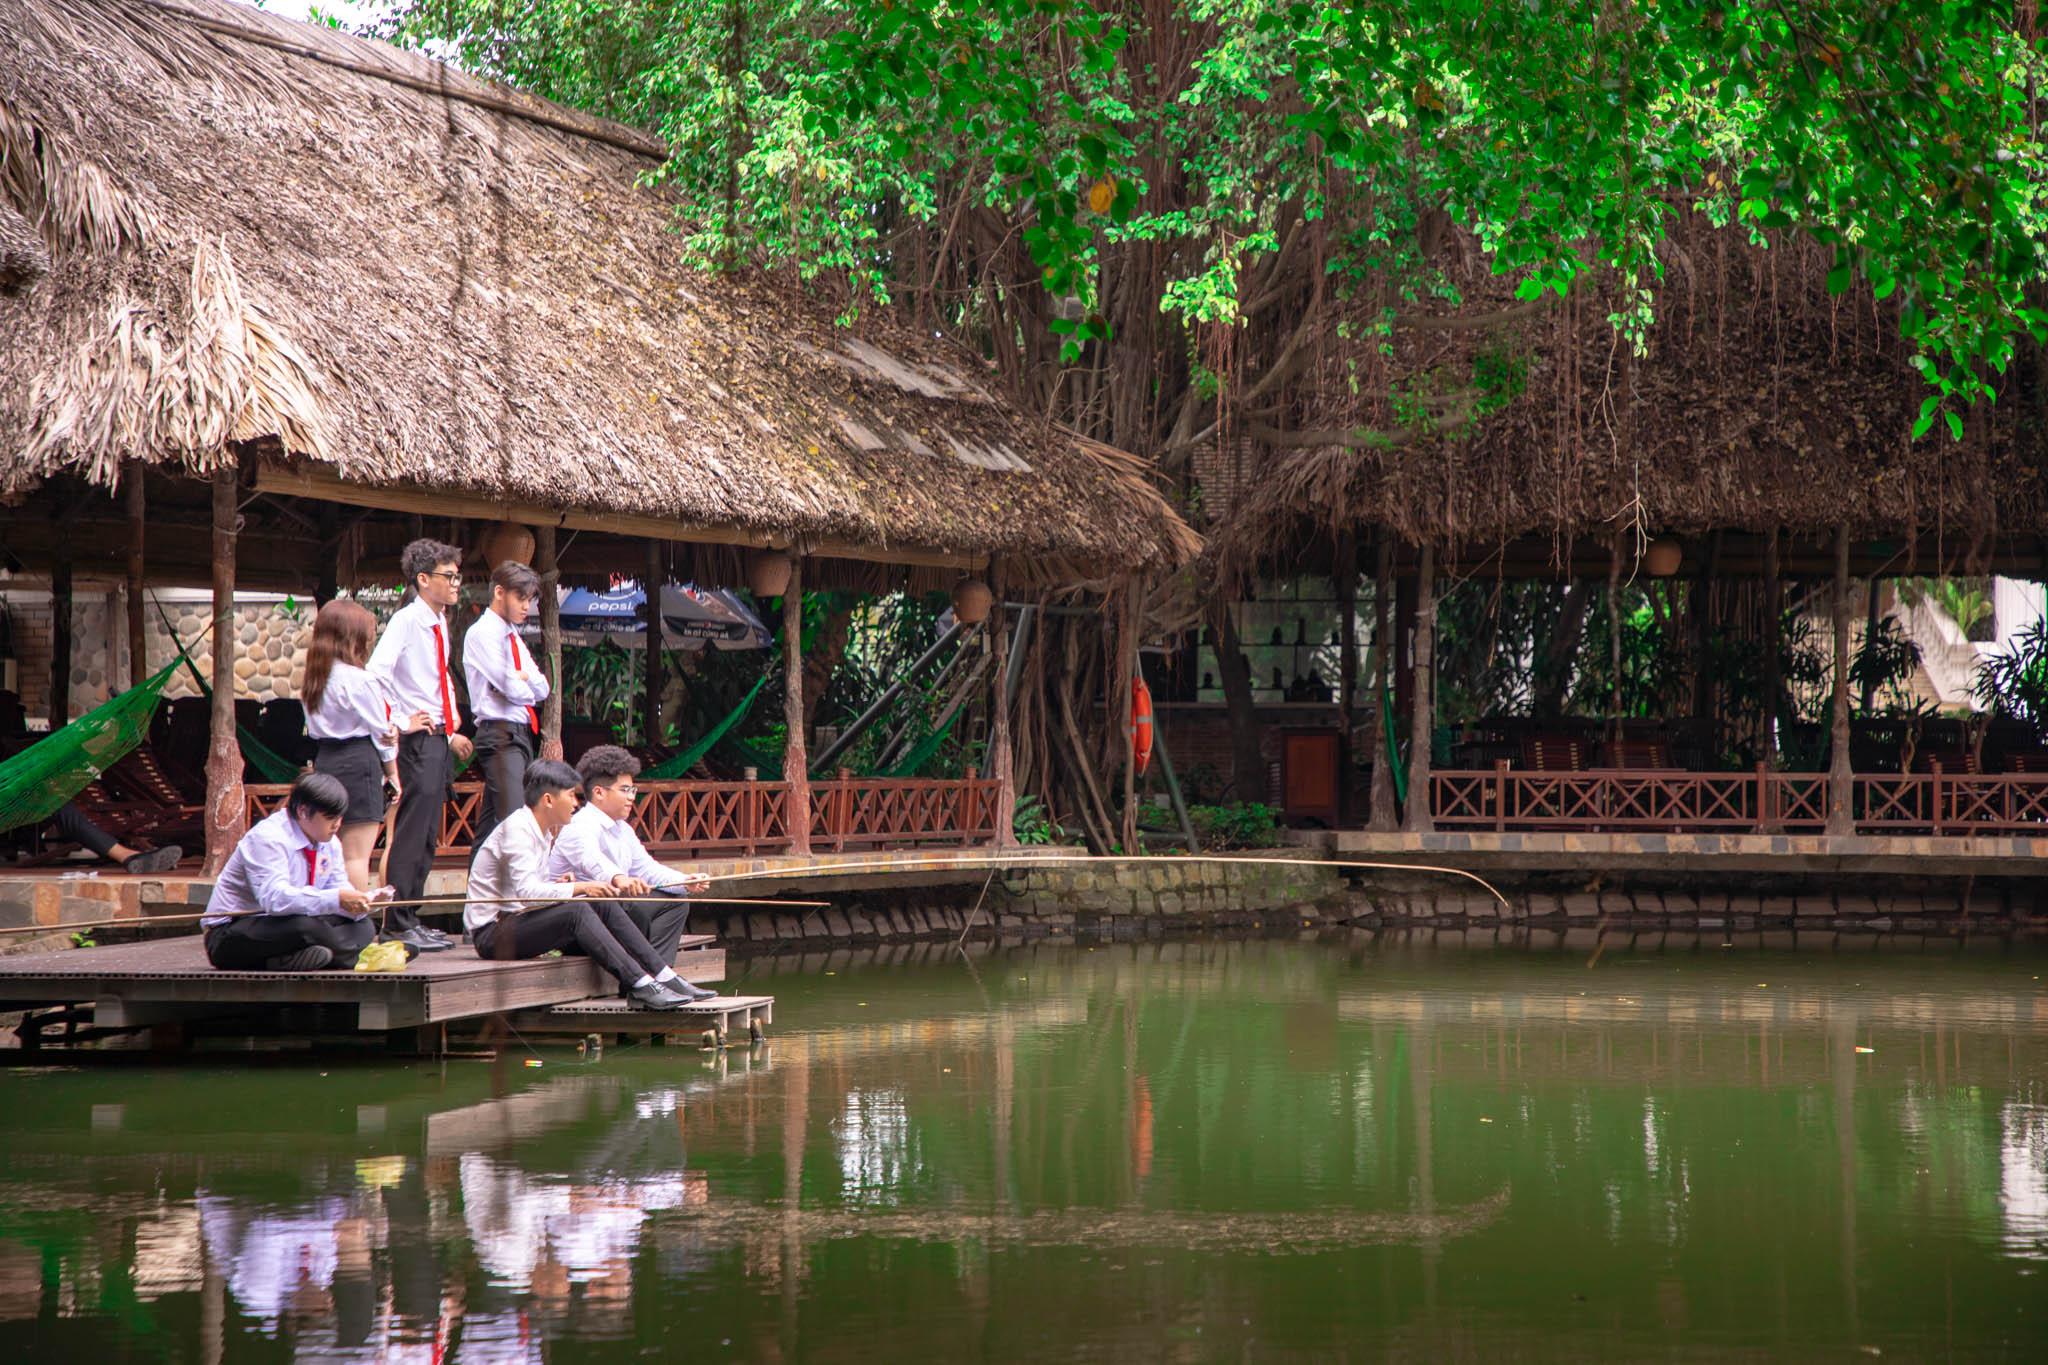 SIUers trải nghiệm khu ngh?dưỡng xanh - Phương Nam Resort